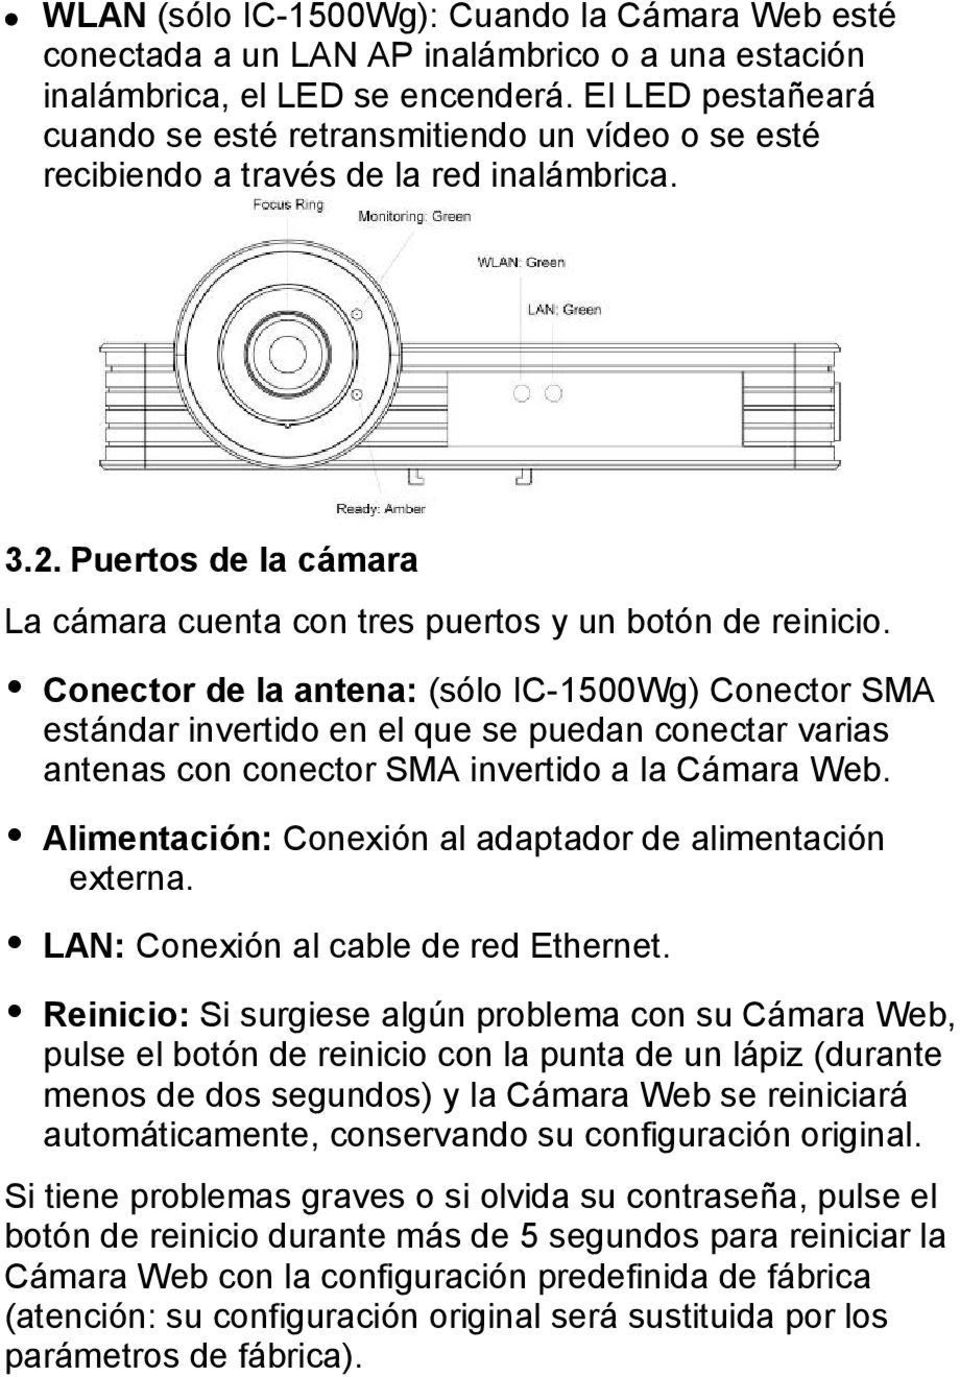 Conector de la antena: (sólo IC-1500Wg) Conector SMA estándar invertido en el que se puedan conectar varias antenas con conector SMA invertido a la Cámara Web.